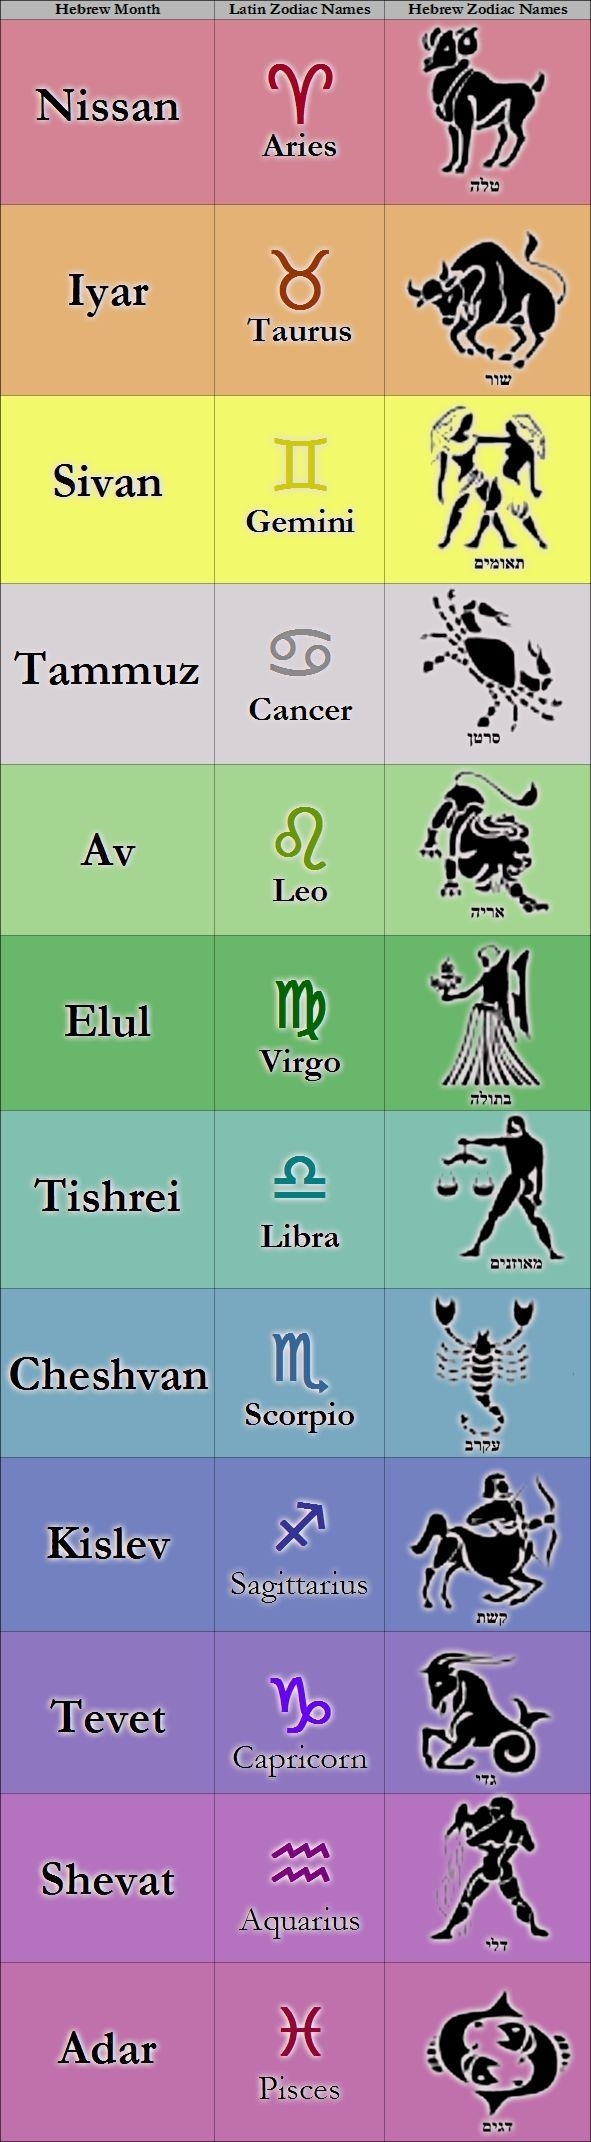 Calendar Dates Of Zodiac Signs In 2020 | Zodiac Signs